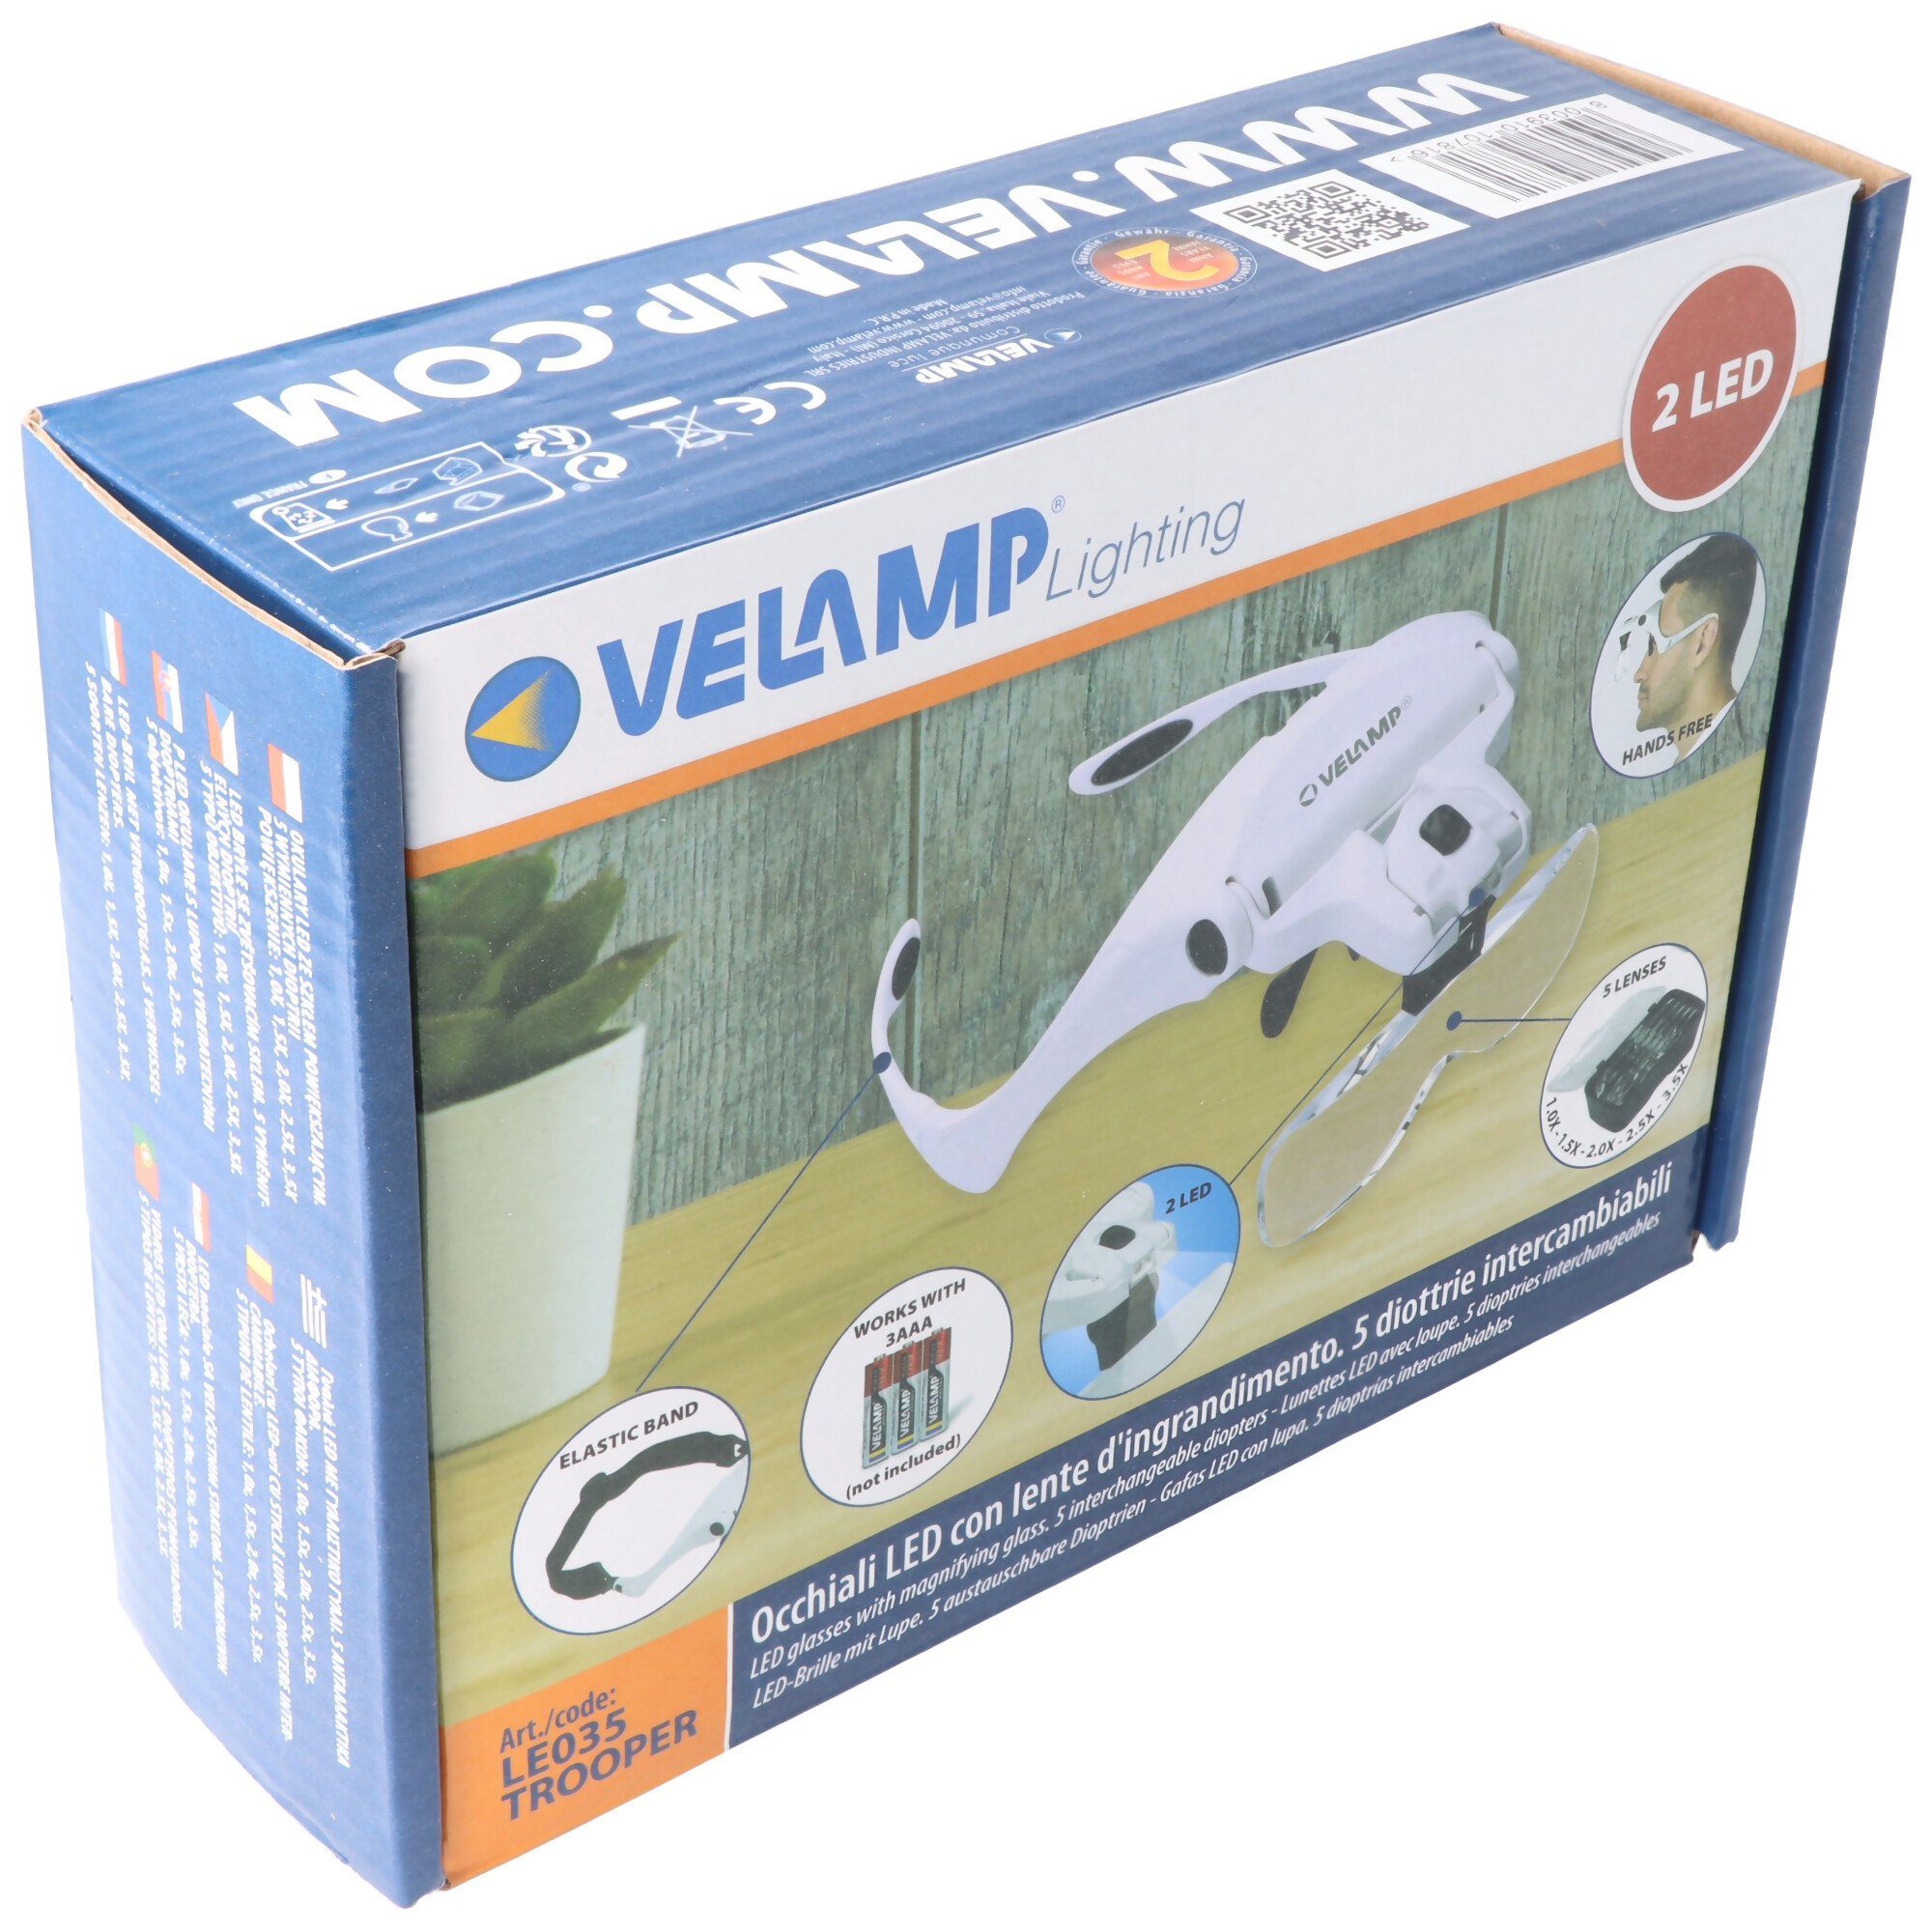 Velamp Lupenlampe auch Lupe und mit LED-Brille Br 5 Dioptrien, für ideal austauschbaren